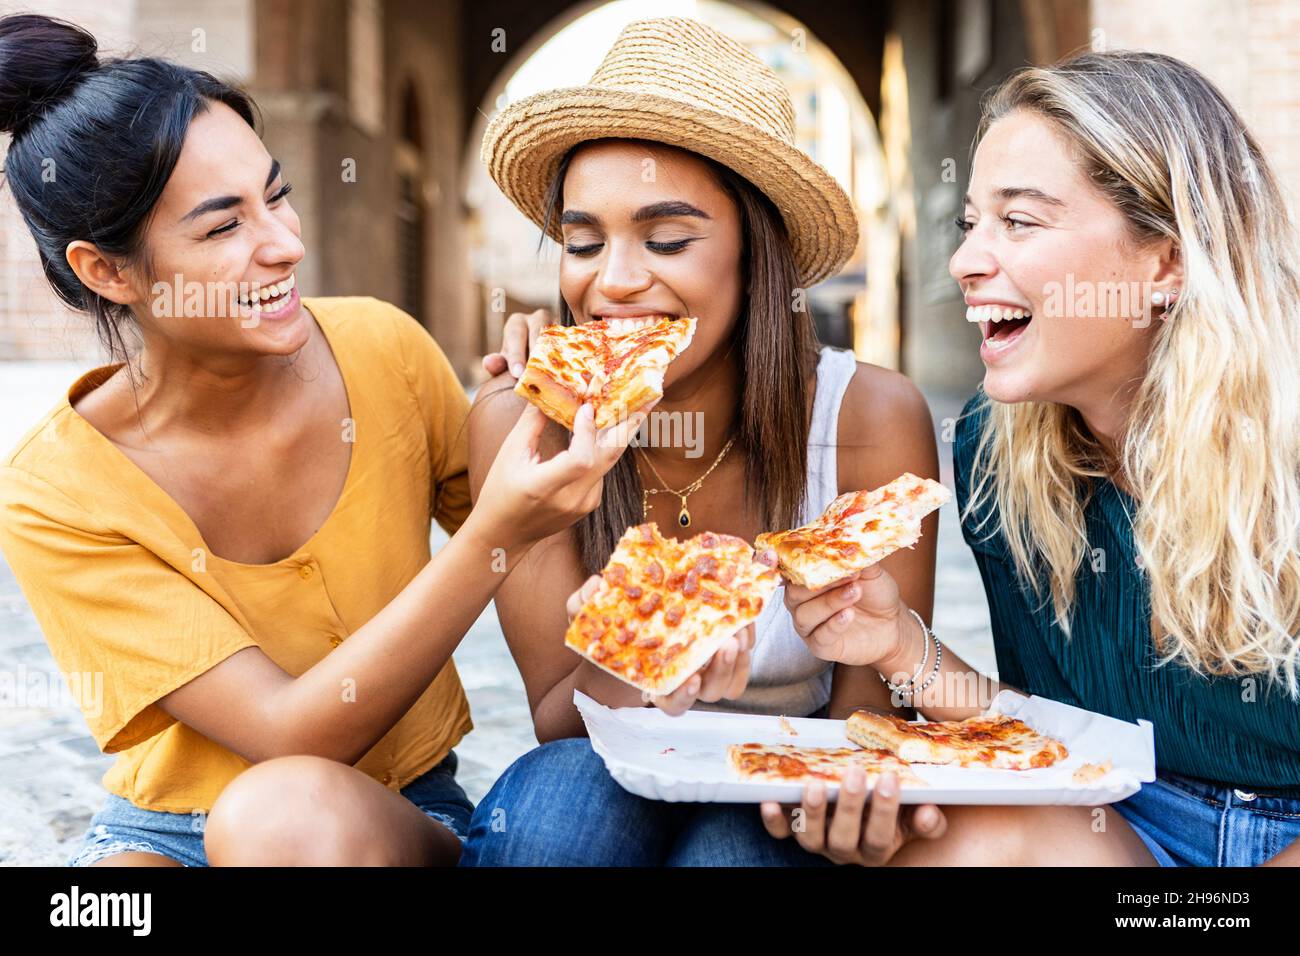 Trois gaies multiraciales femmes de manger de la pizza dans la rue Banque D'Images